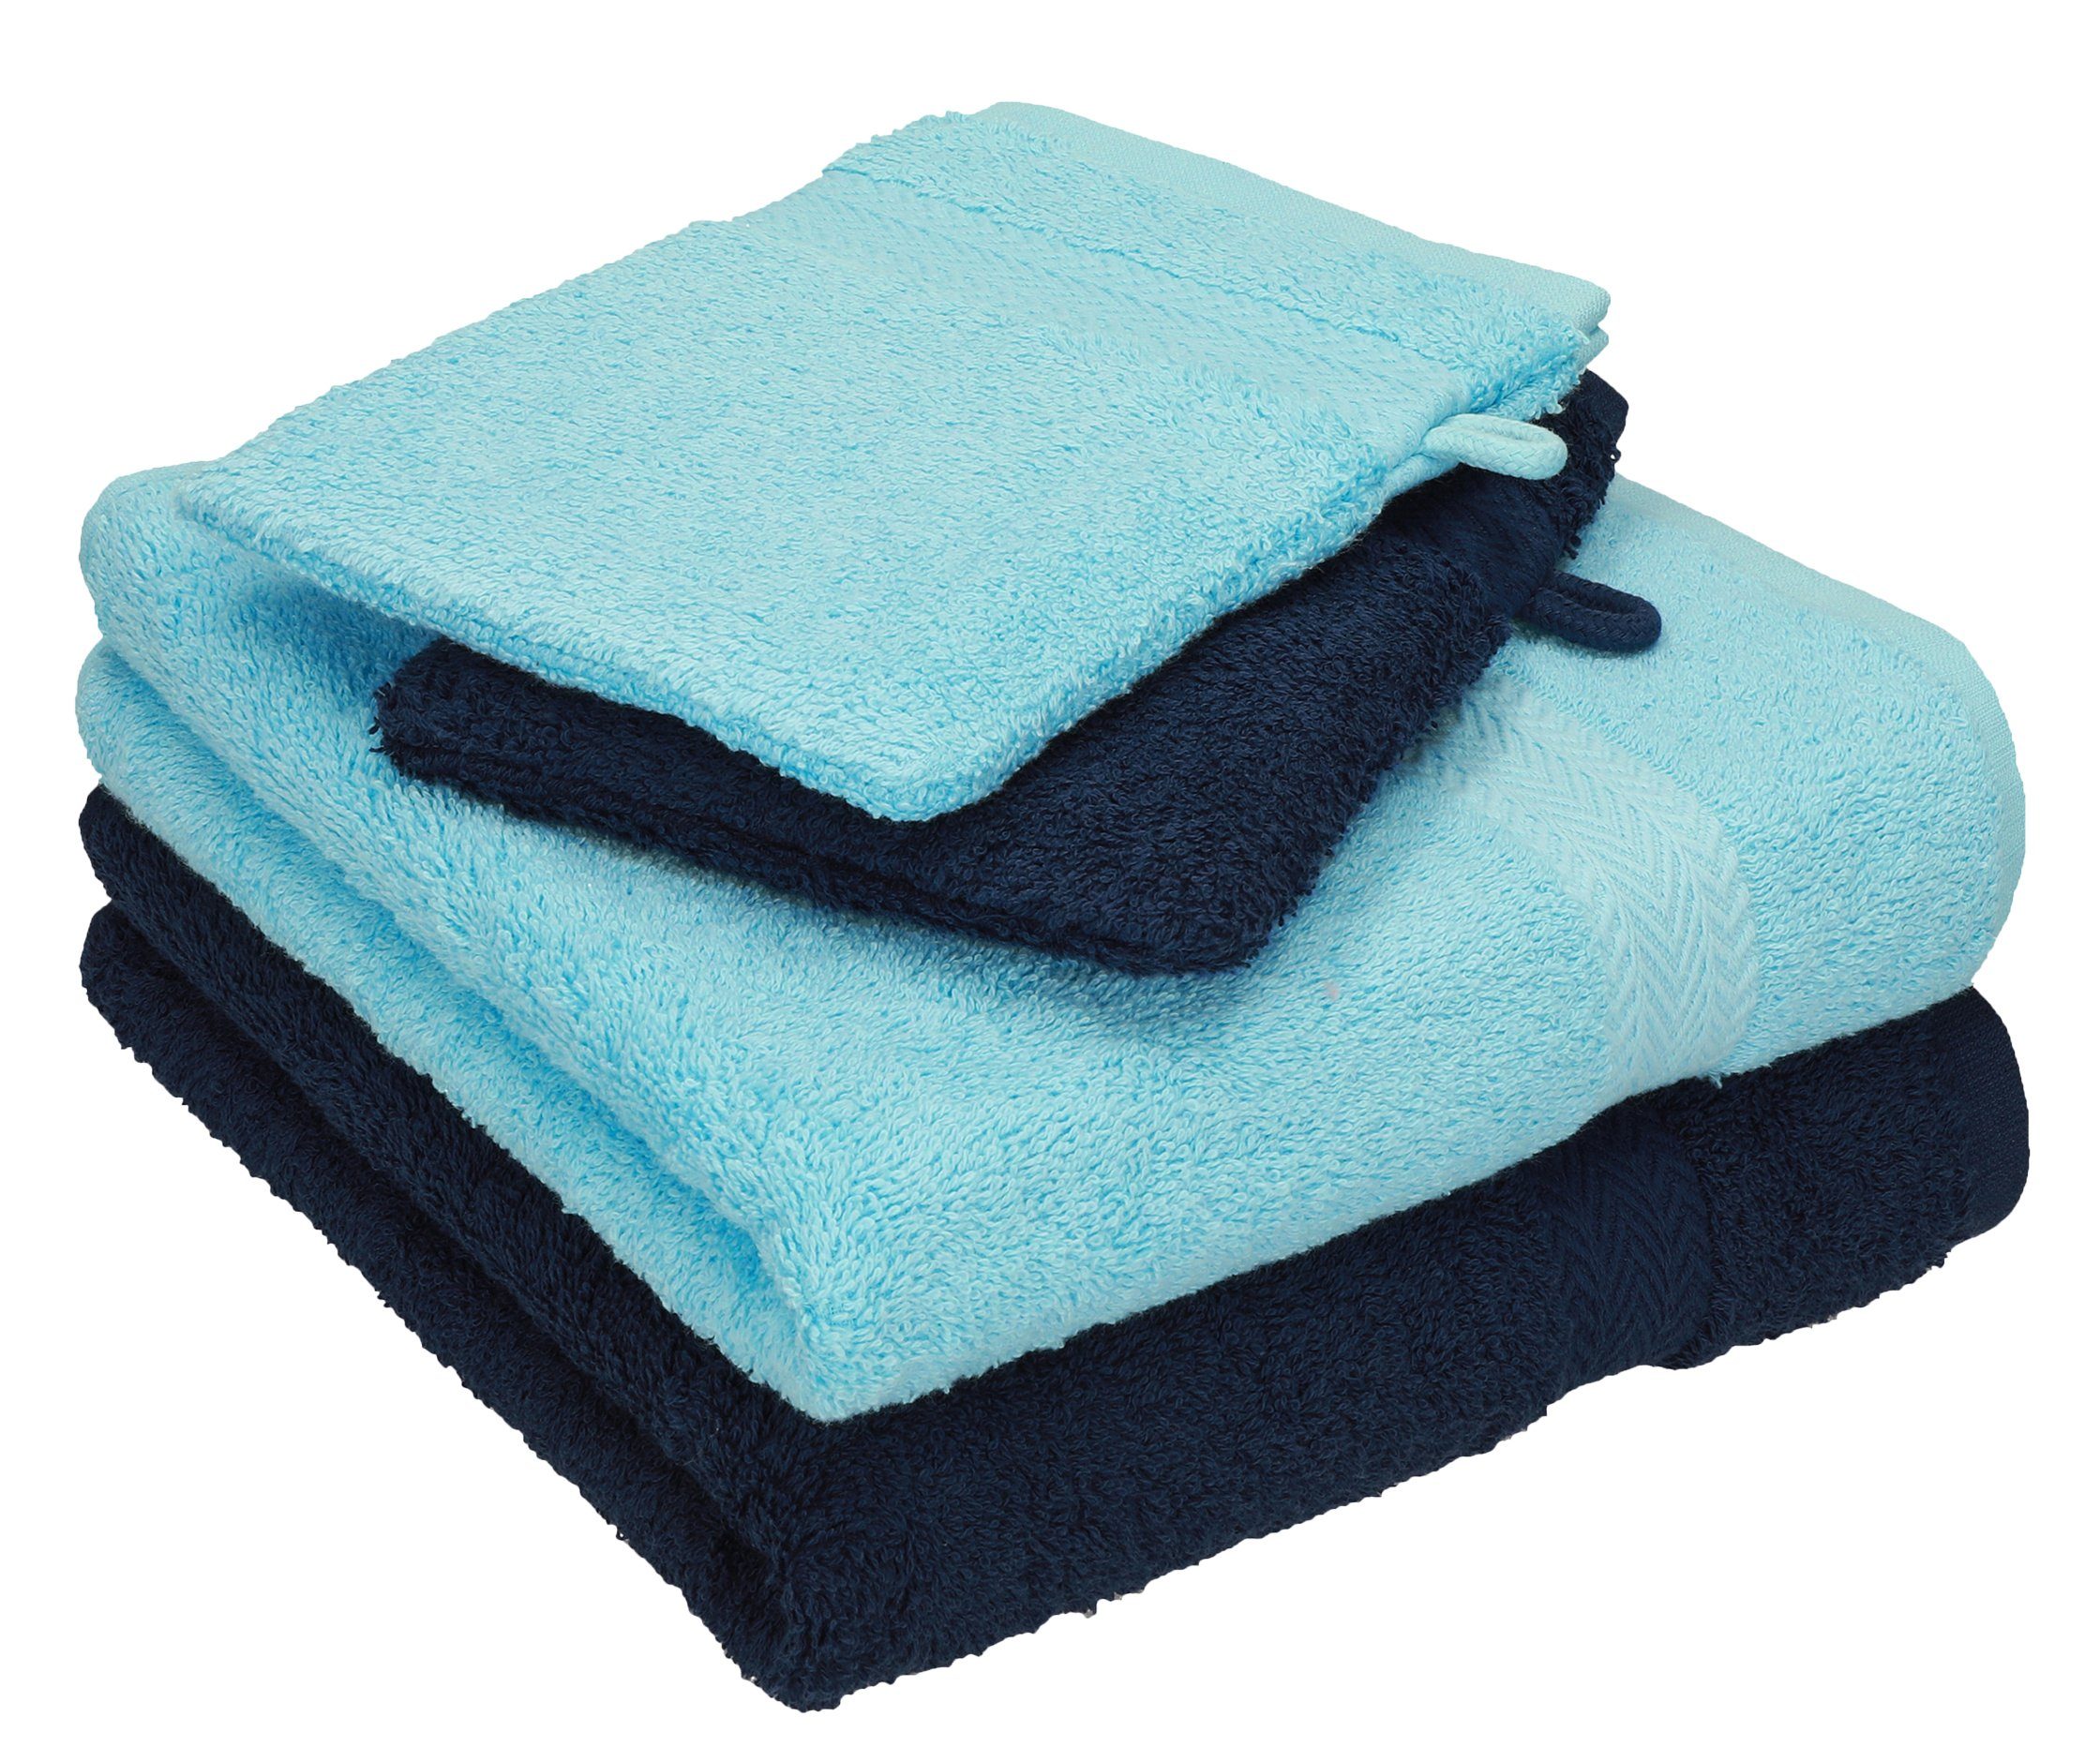 Betz Handtuch Set 4 TLG. Handtuch Set Happy Pack 100% Baumwolle 2 Handtücher 2 Waschhandschuhe, 100% Baumwolle, (4-tlg) türkis-dunkelblau